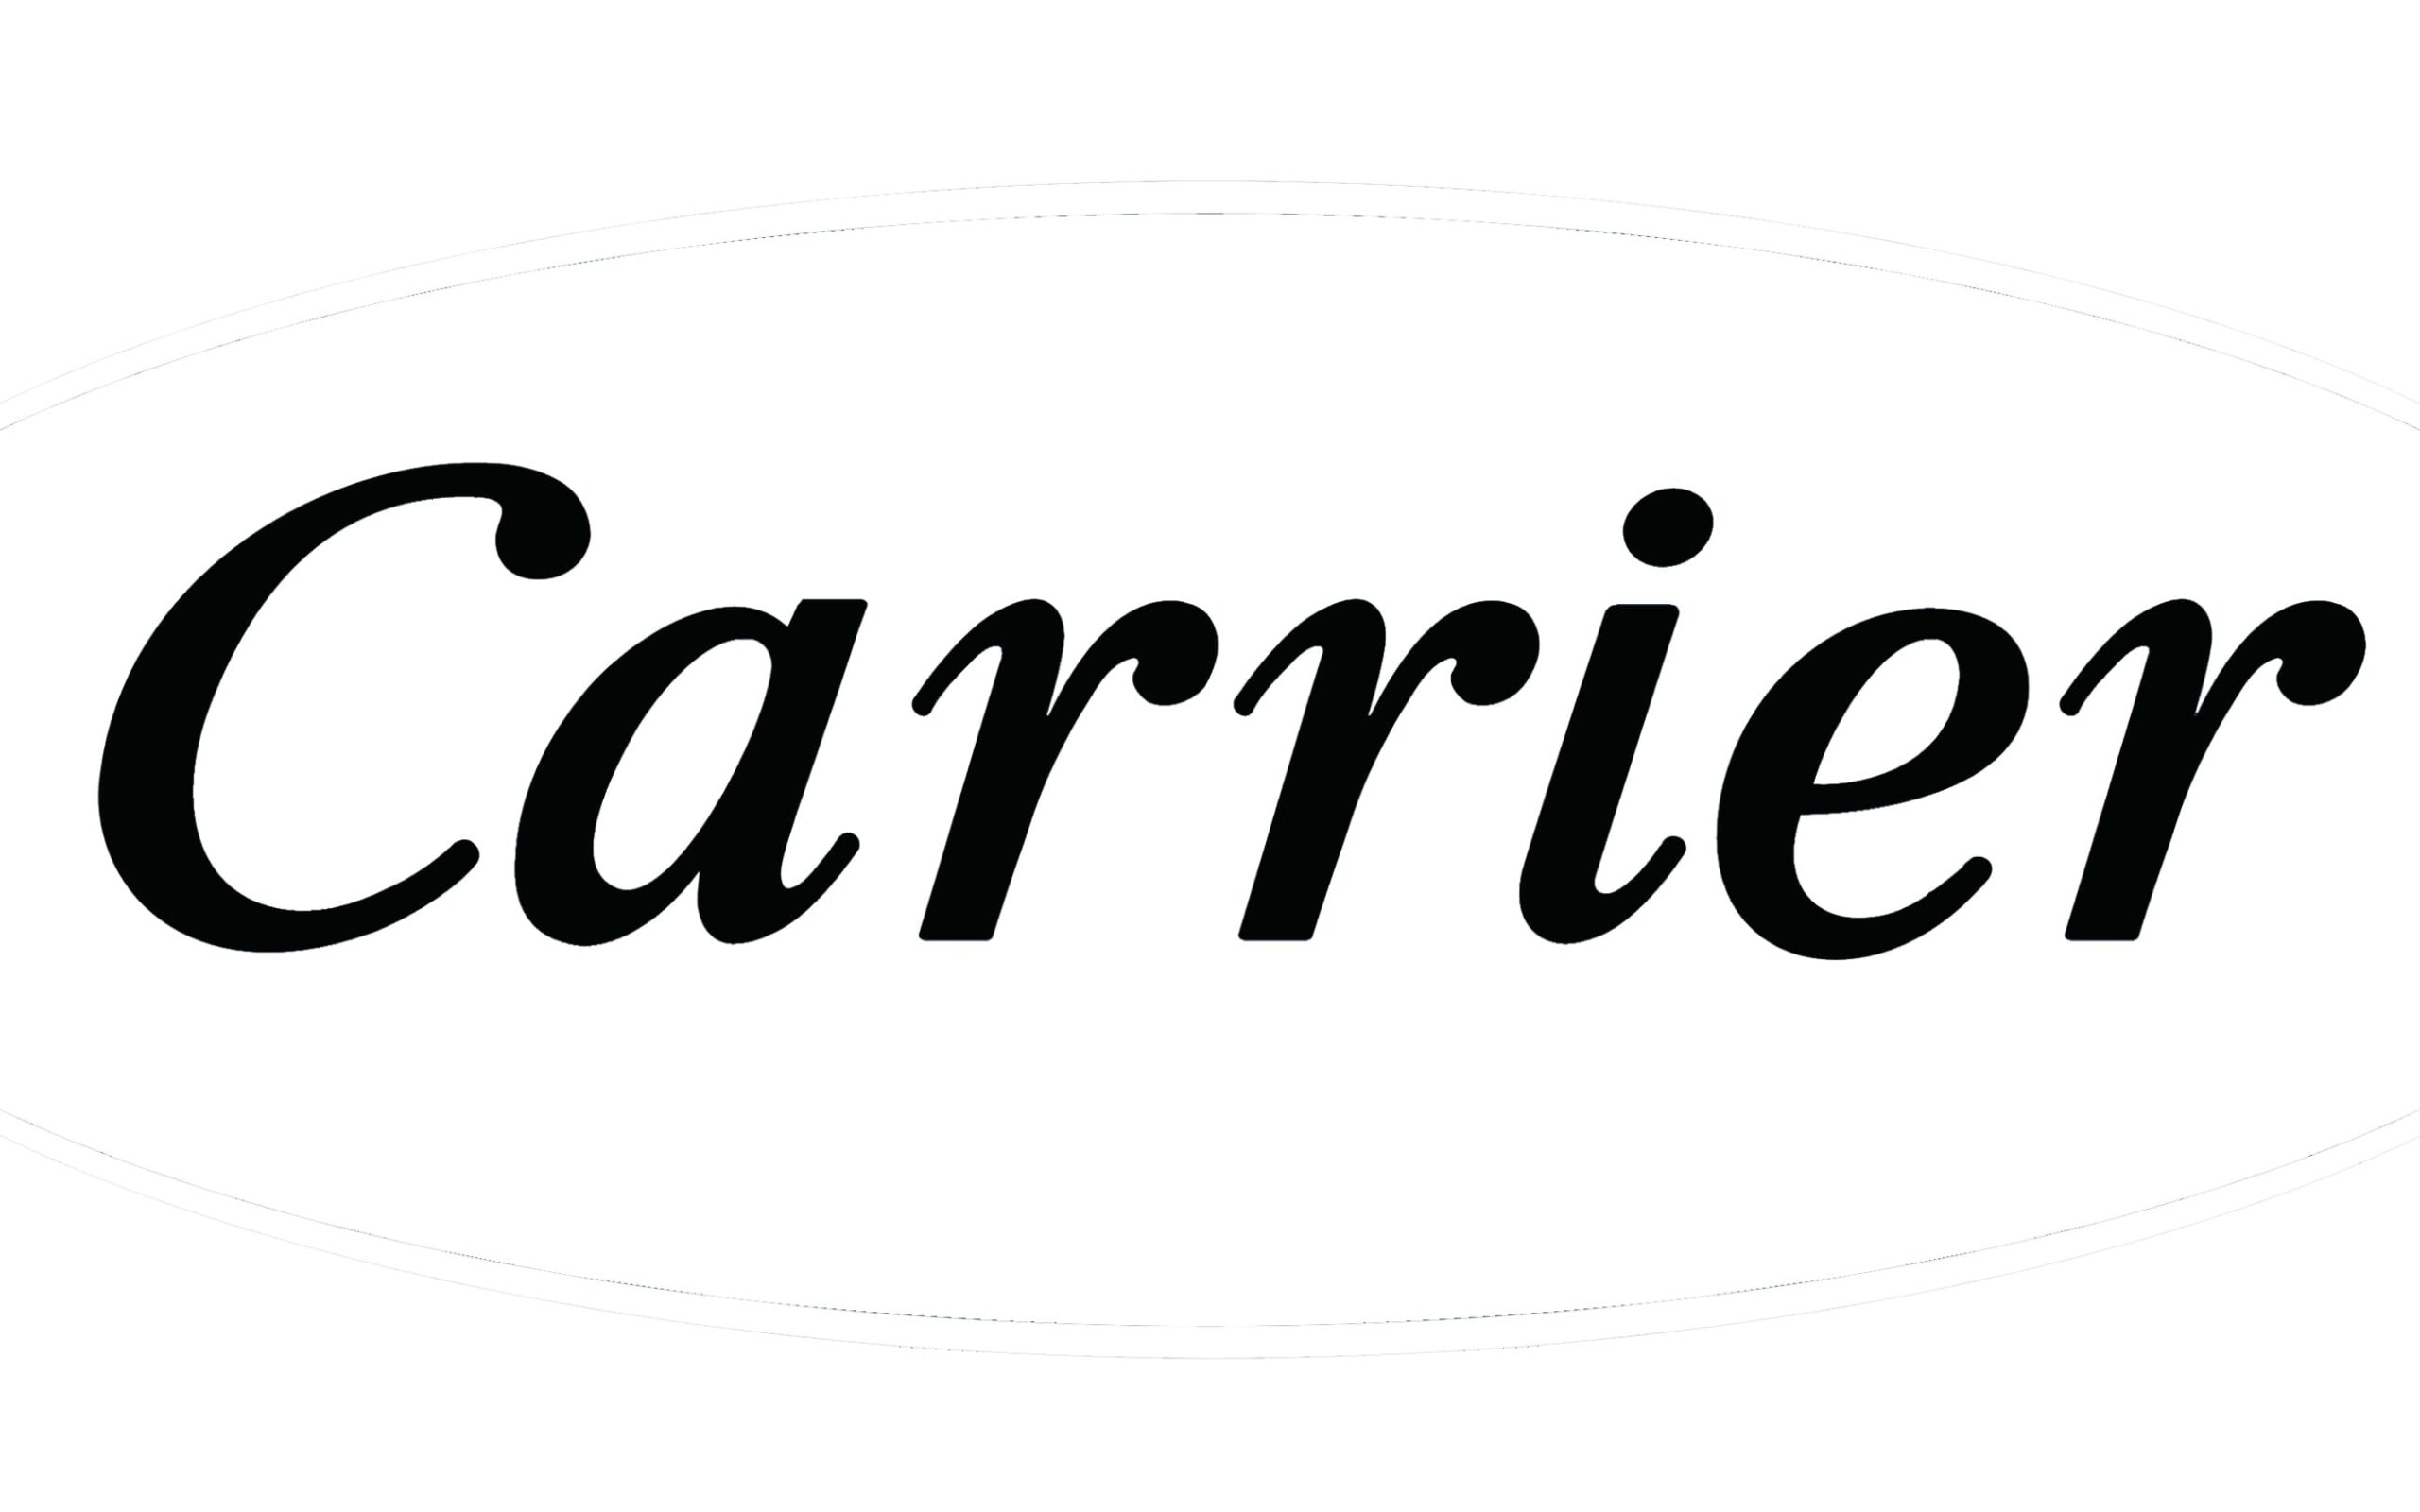 Carrier Recruitment